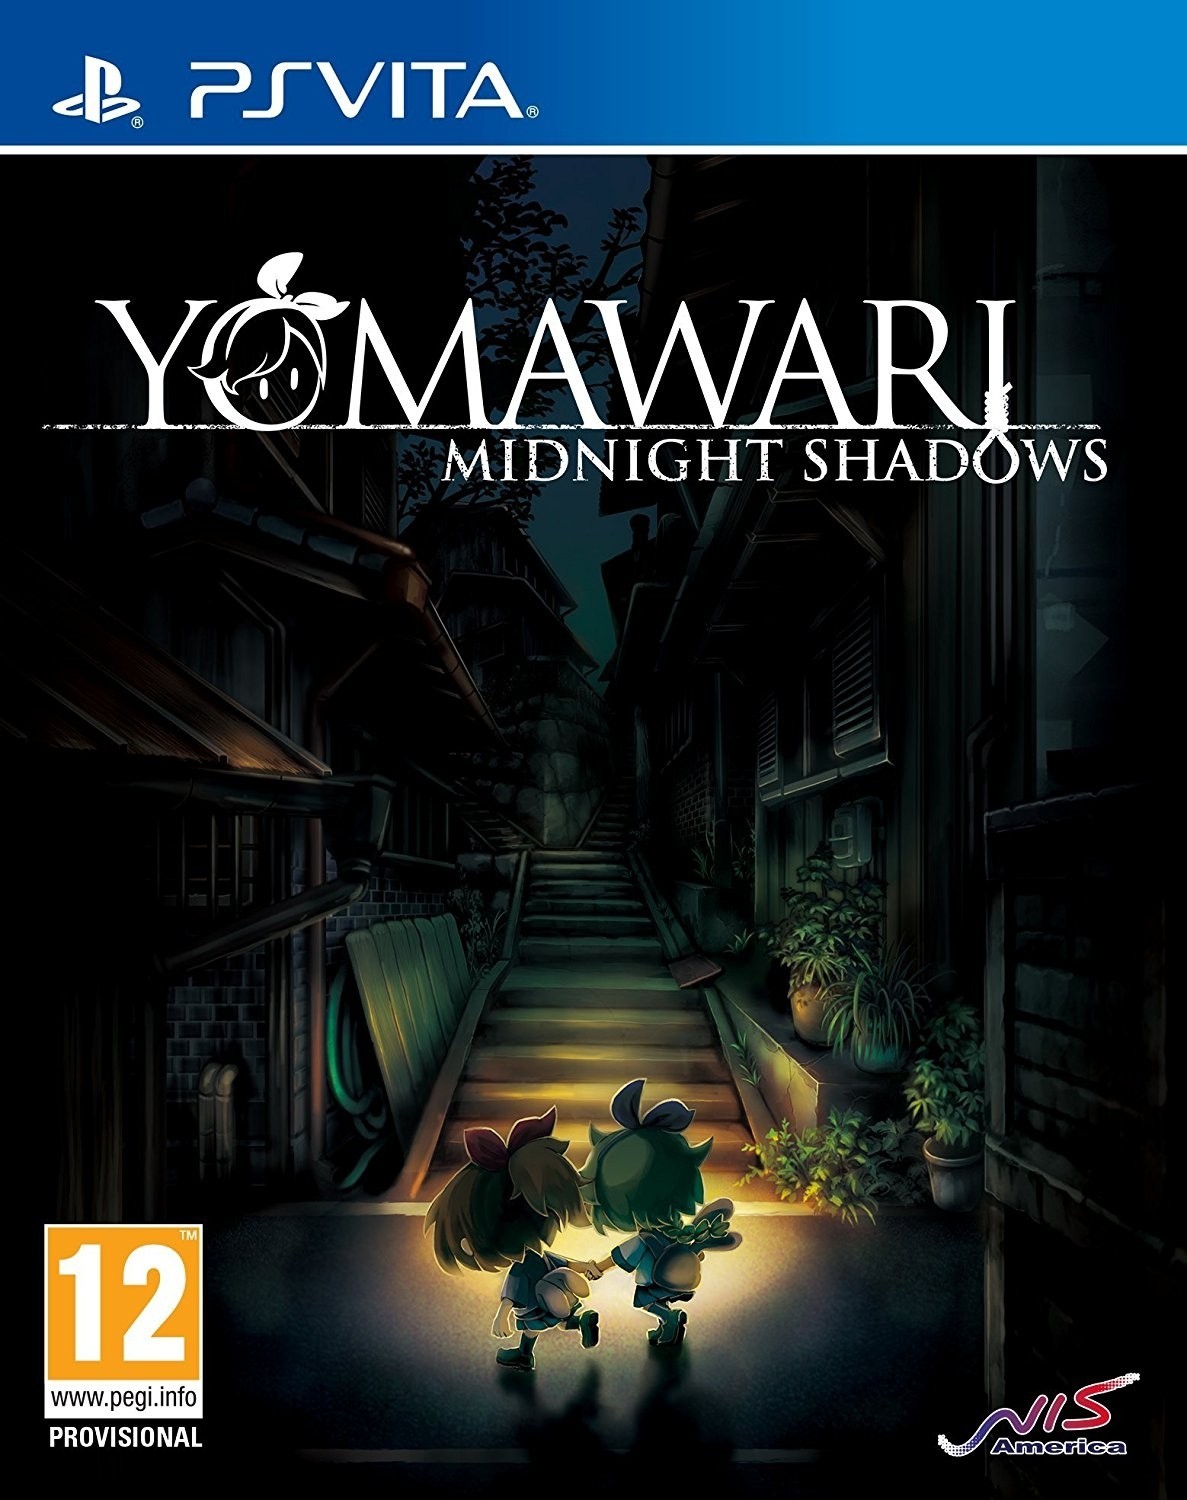 Yomawari: Midnight Shadows (PSVita), Nippon Ichi Software